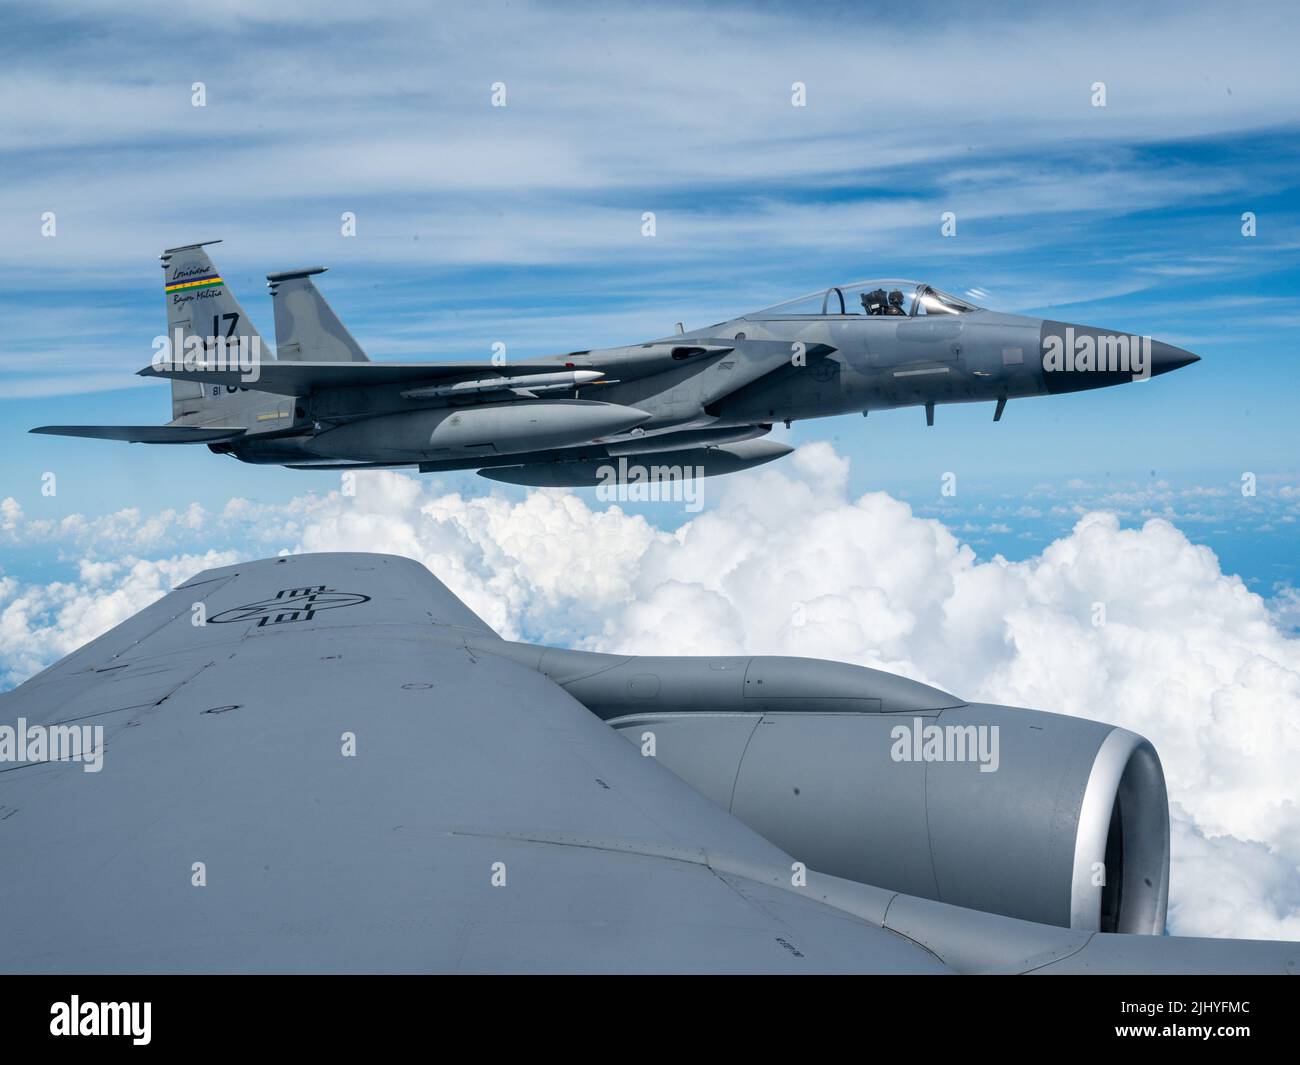 Un aereo da caccia dell'aeronautica statunitense F-15 Eagle, con la 159th Fighter Wing, si avvicina a un velivolo KC-135R Stratotanker per il rifornimento il 10 luglio 2022 sul Golfo del Messico. Foto Stock